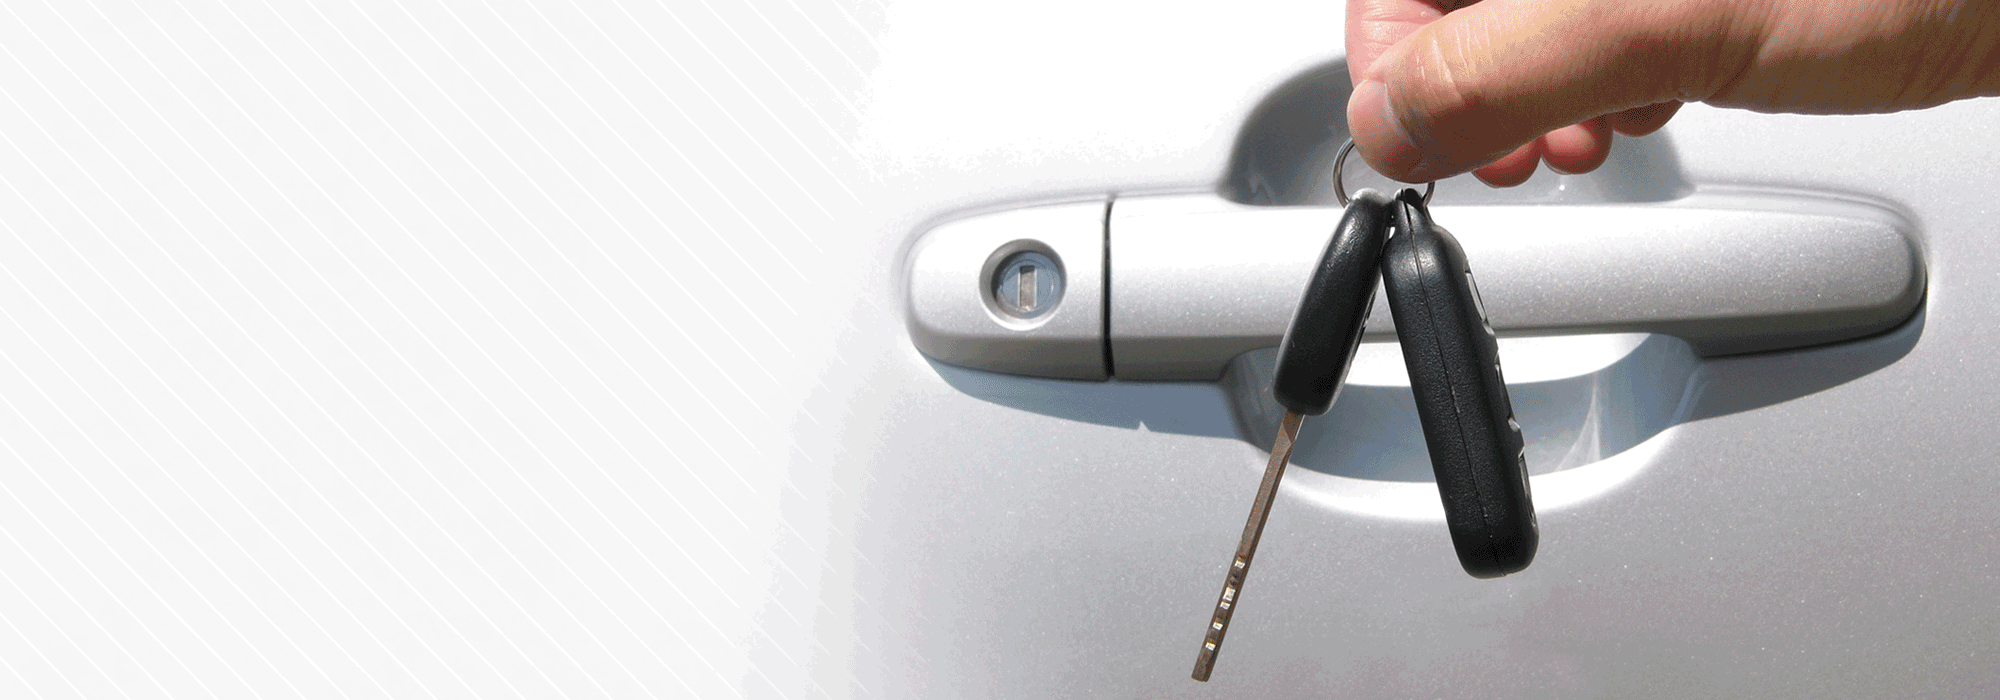 SK Auto Locksmith, car keys and car lock image